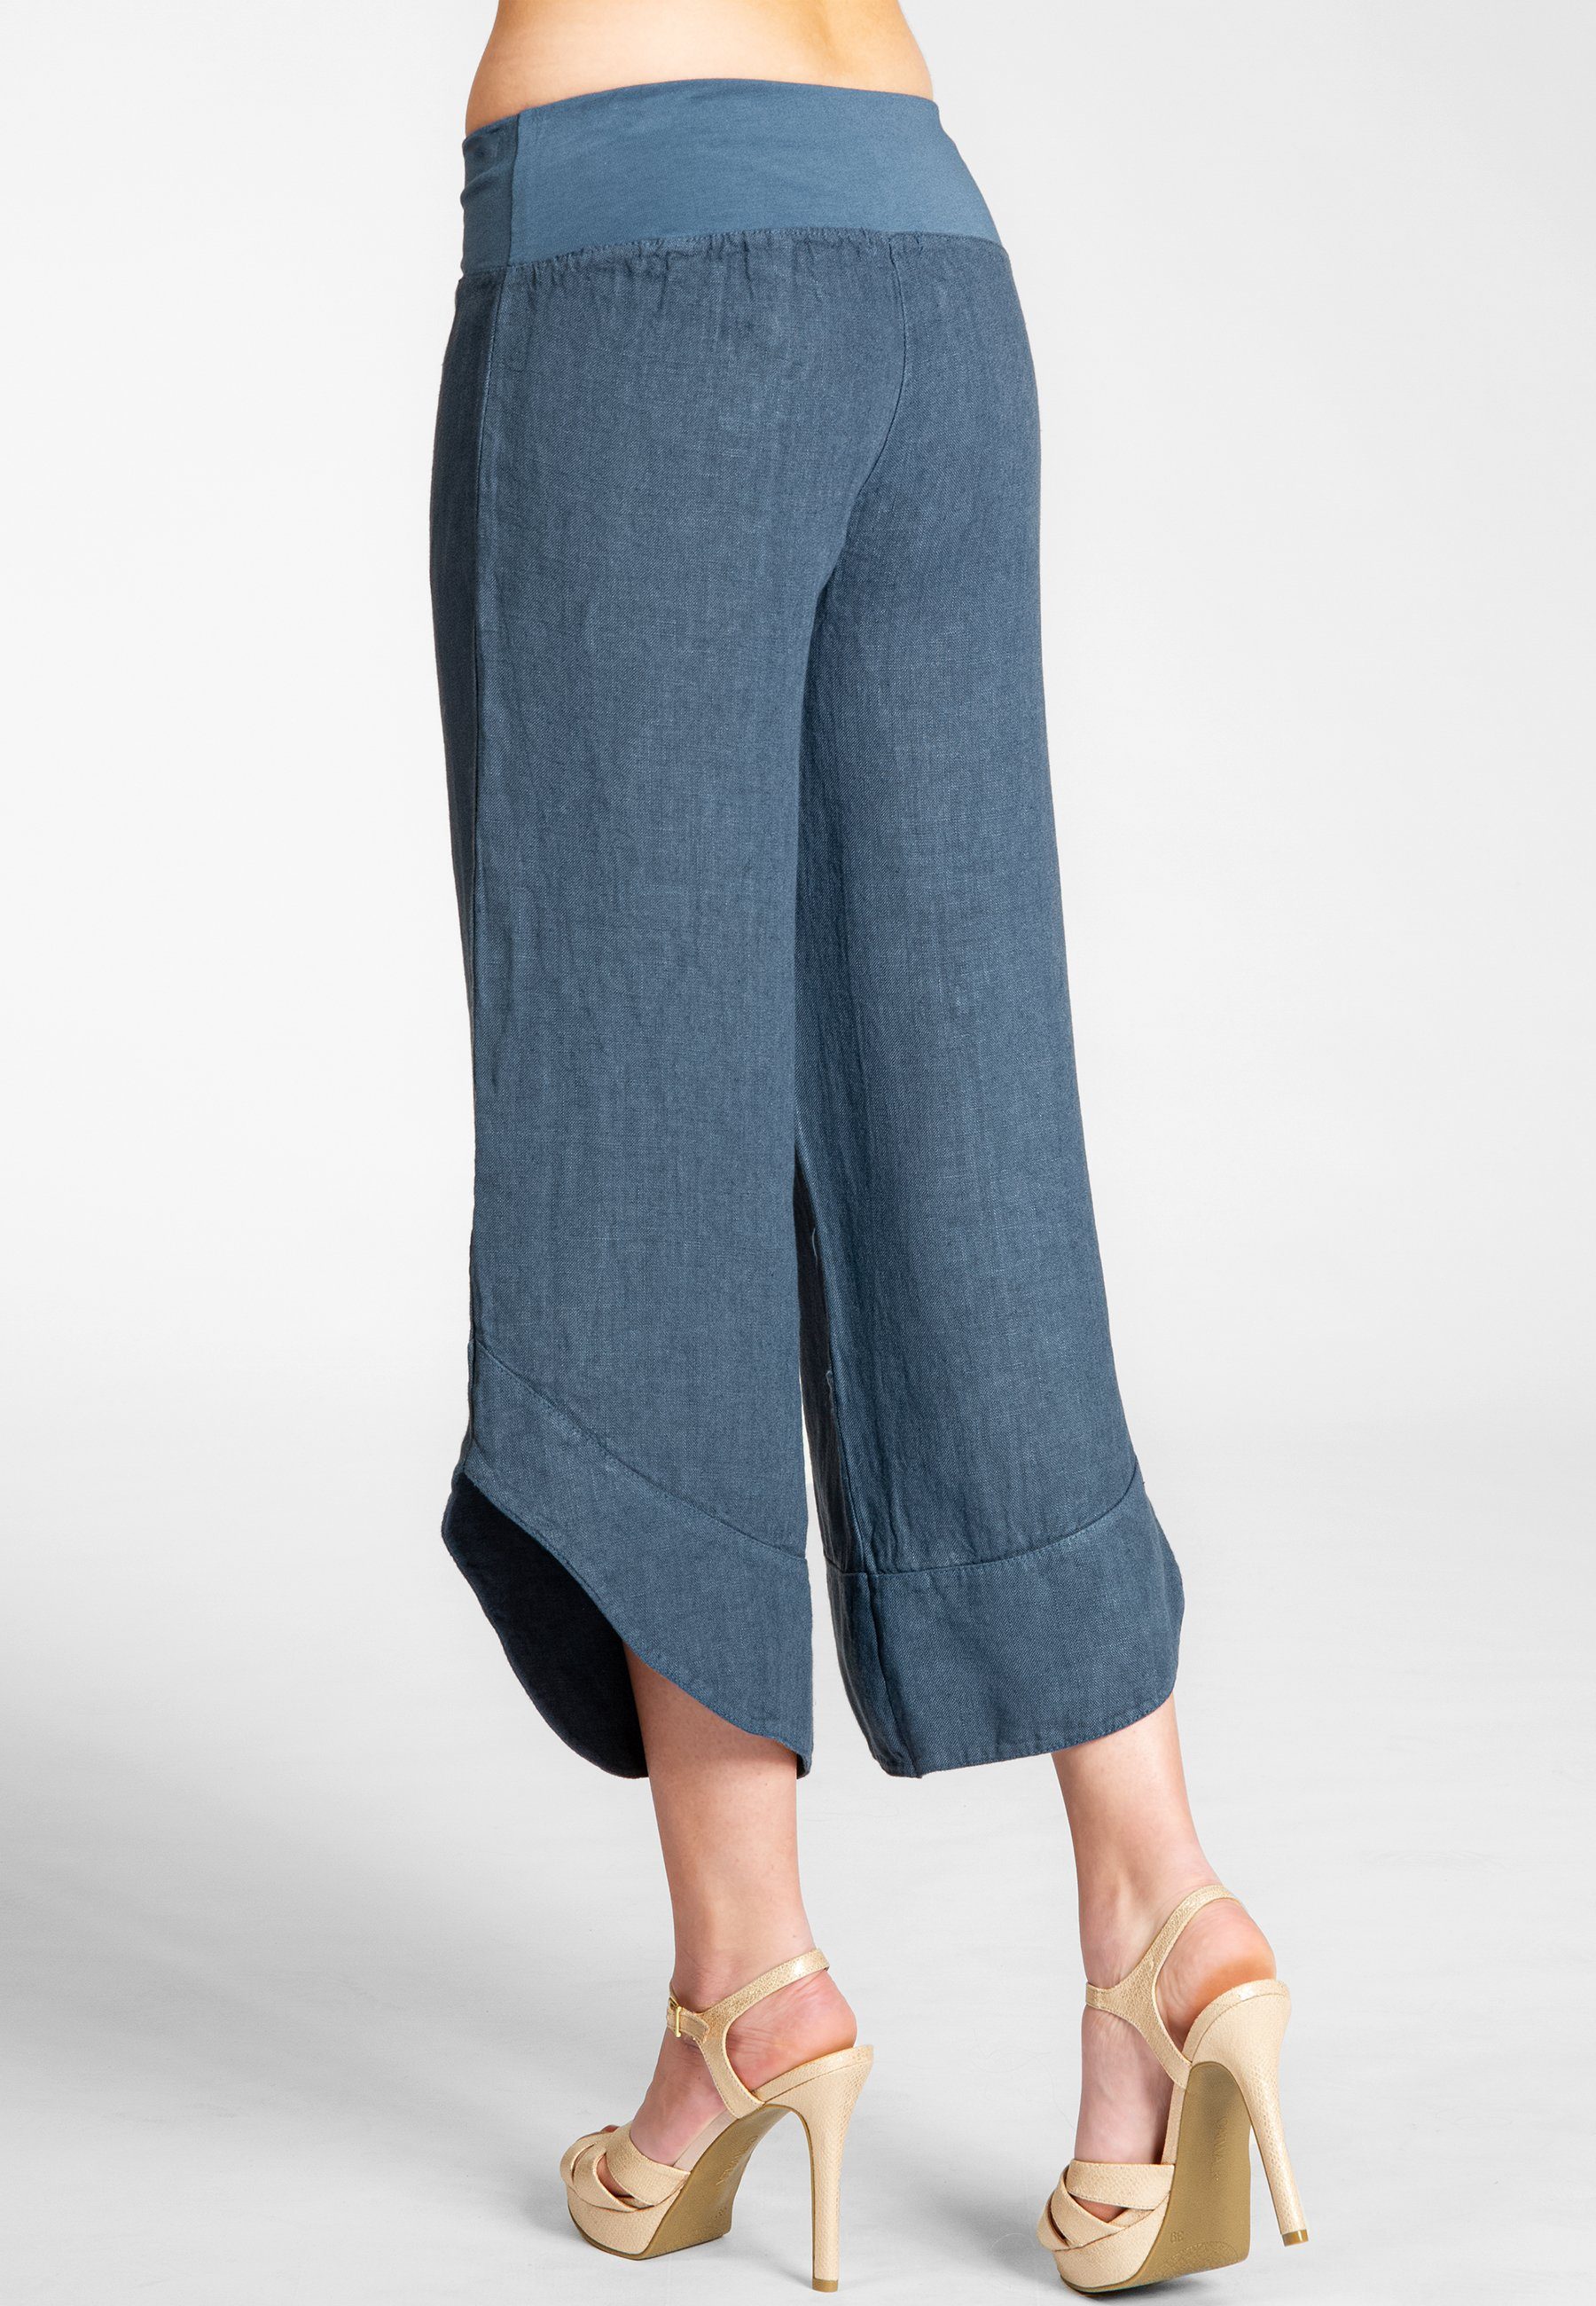 Hose robustem Damen 3/4 KHS052 jeans Caspar Leinen Capri blau Leinenhose aus